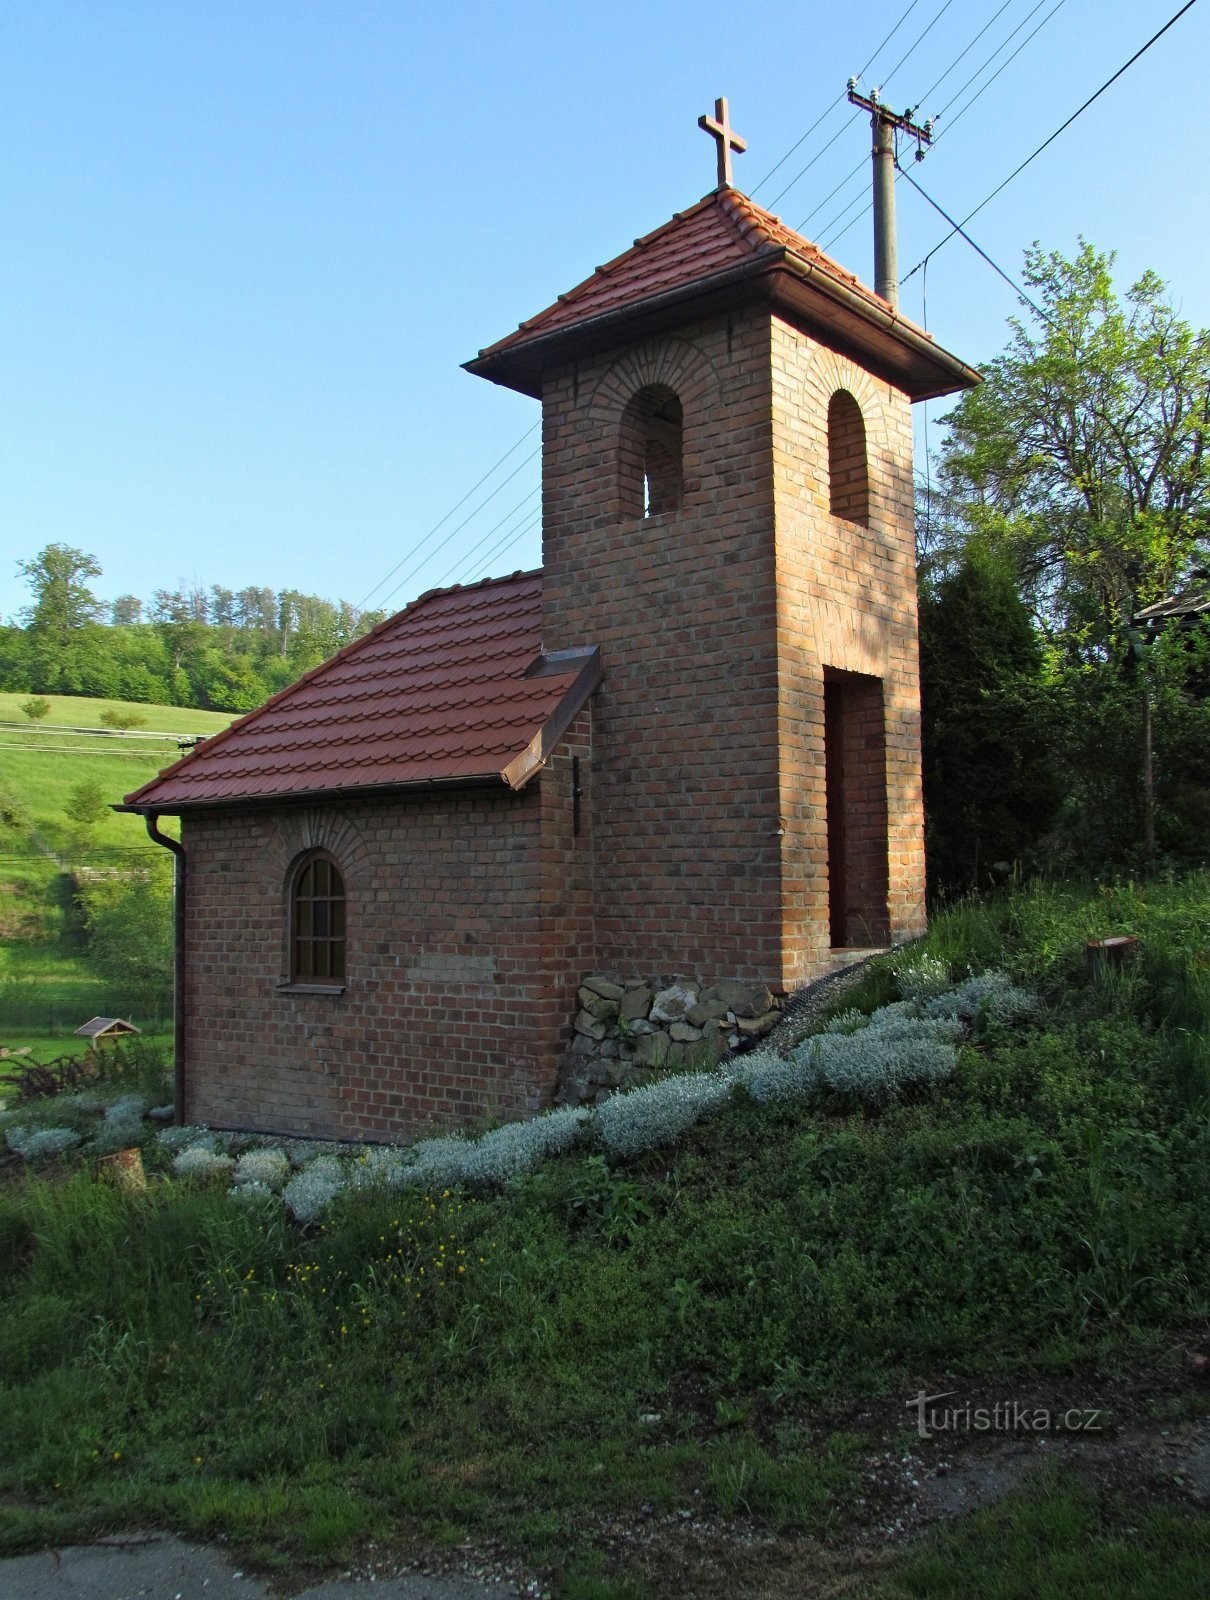 Chřiby - monumenti del villaggio di Staré Hutě